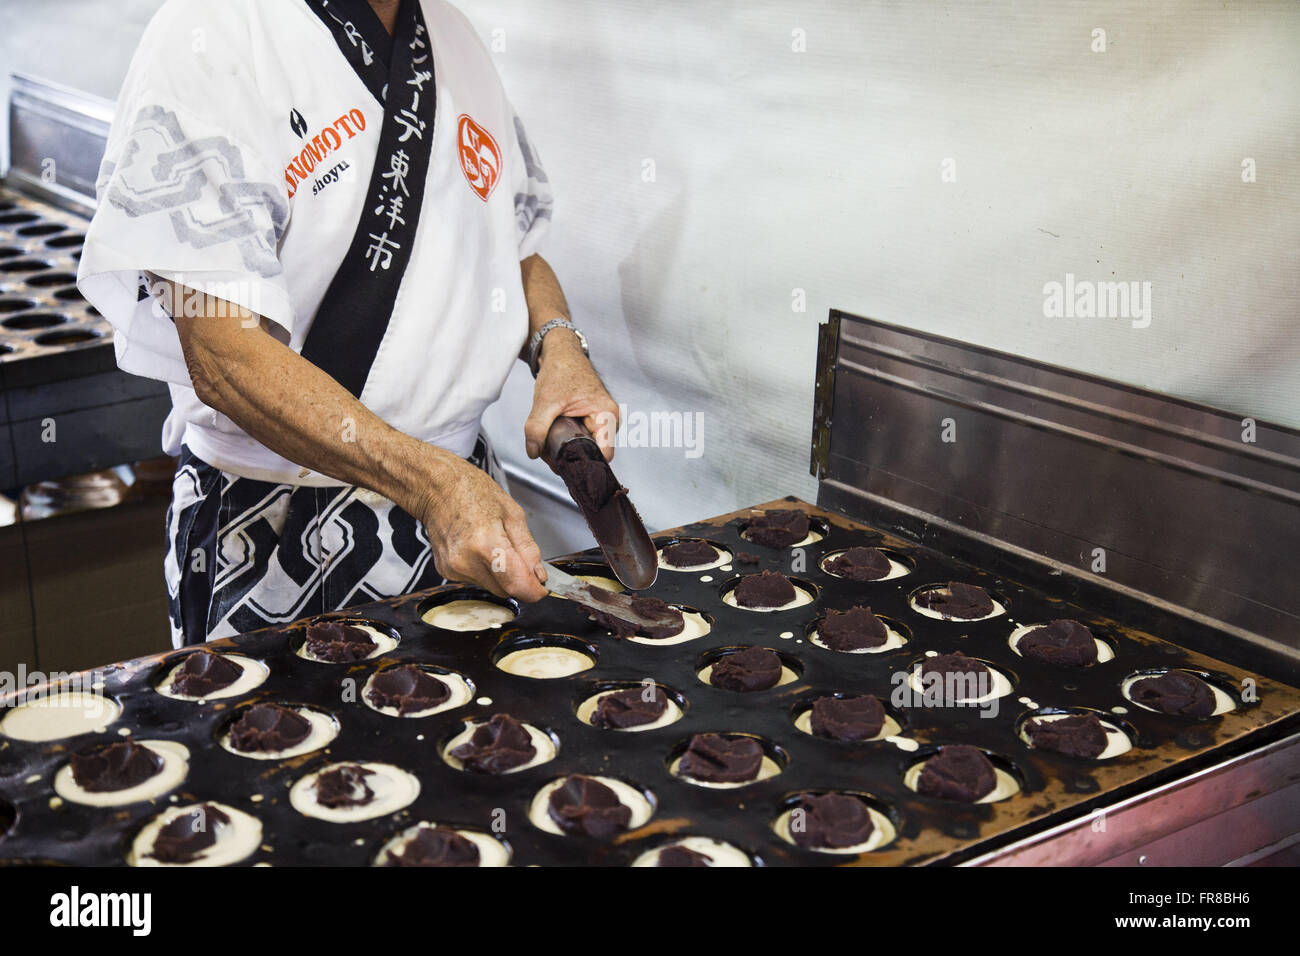 L'uomo la preparazione di dolci fagioli azuki chiamato imagawayaki Foto Stock